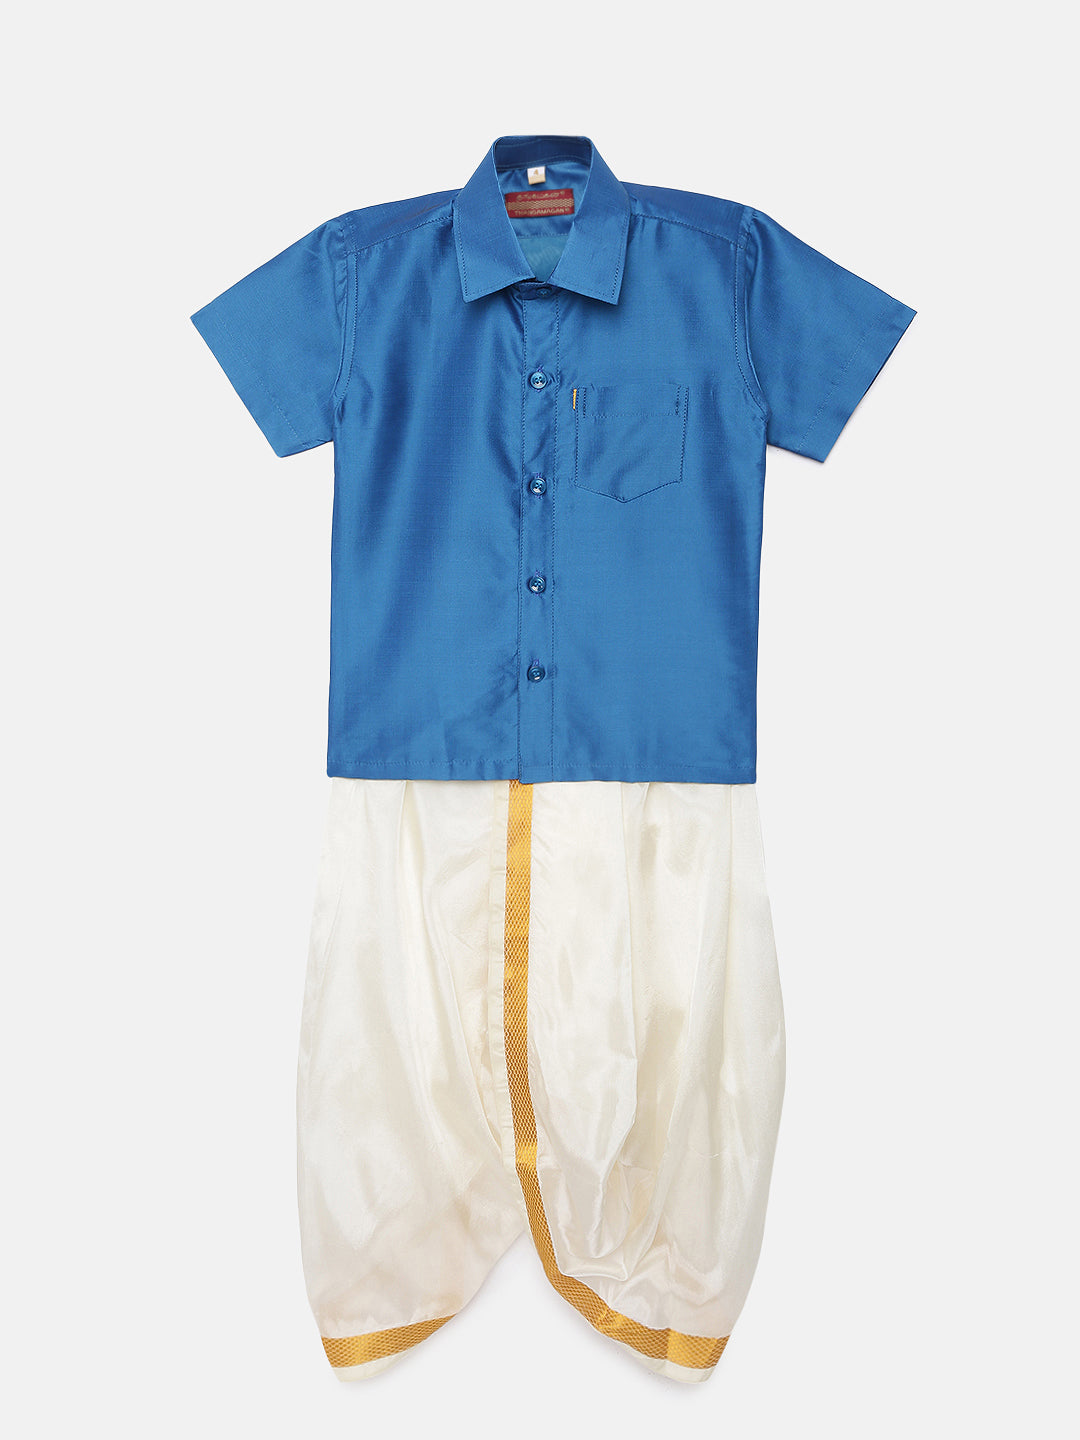 24. Boys Panjagajam & Shirt Set